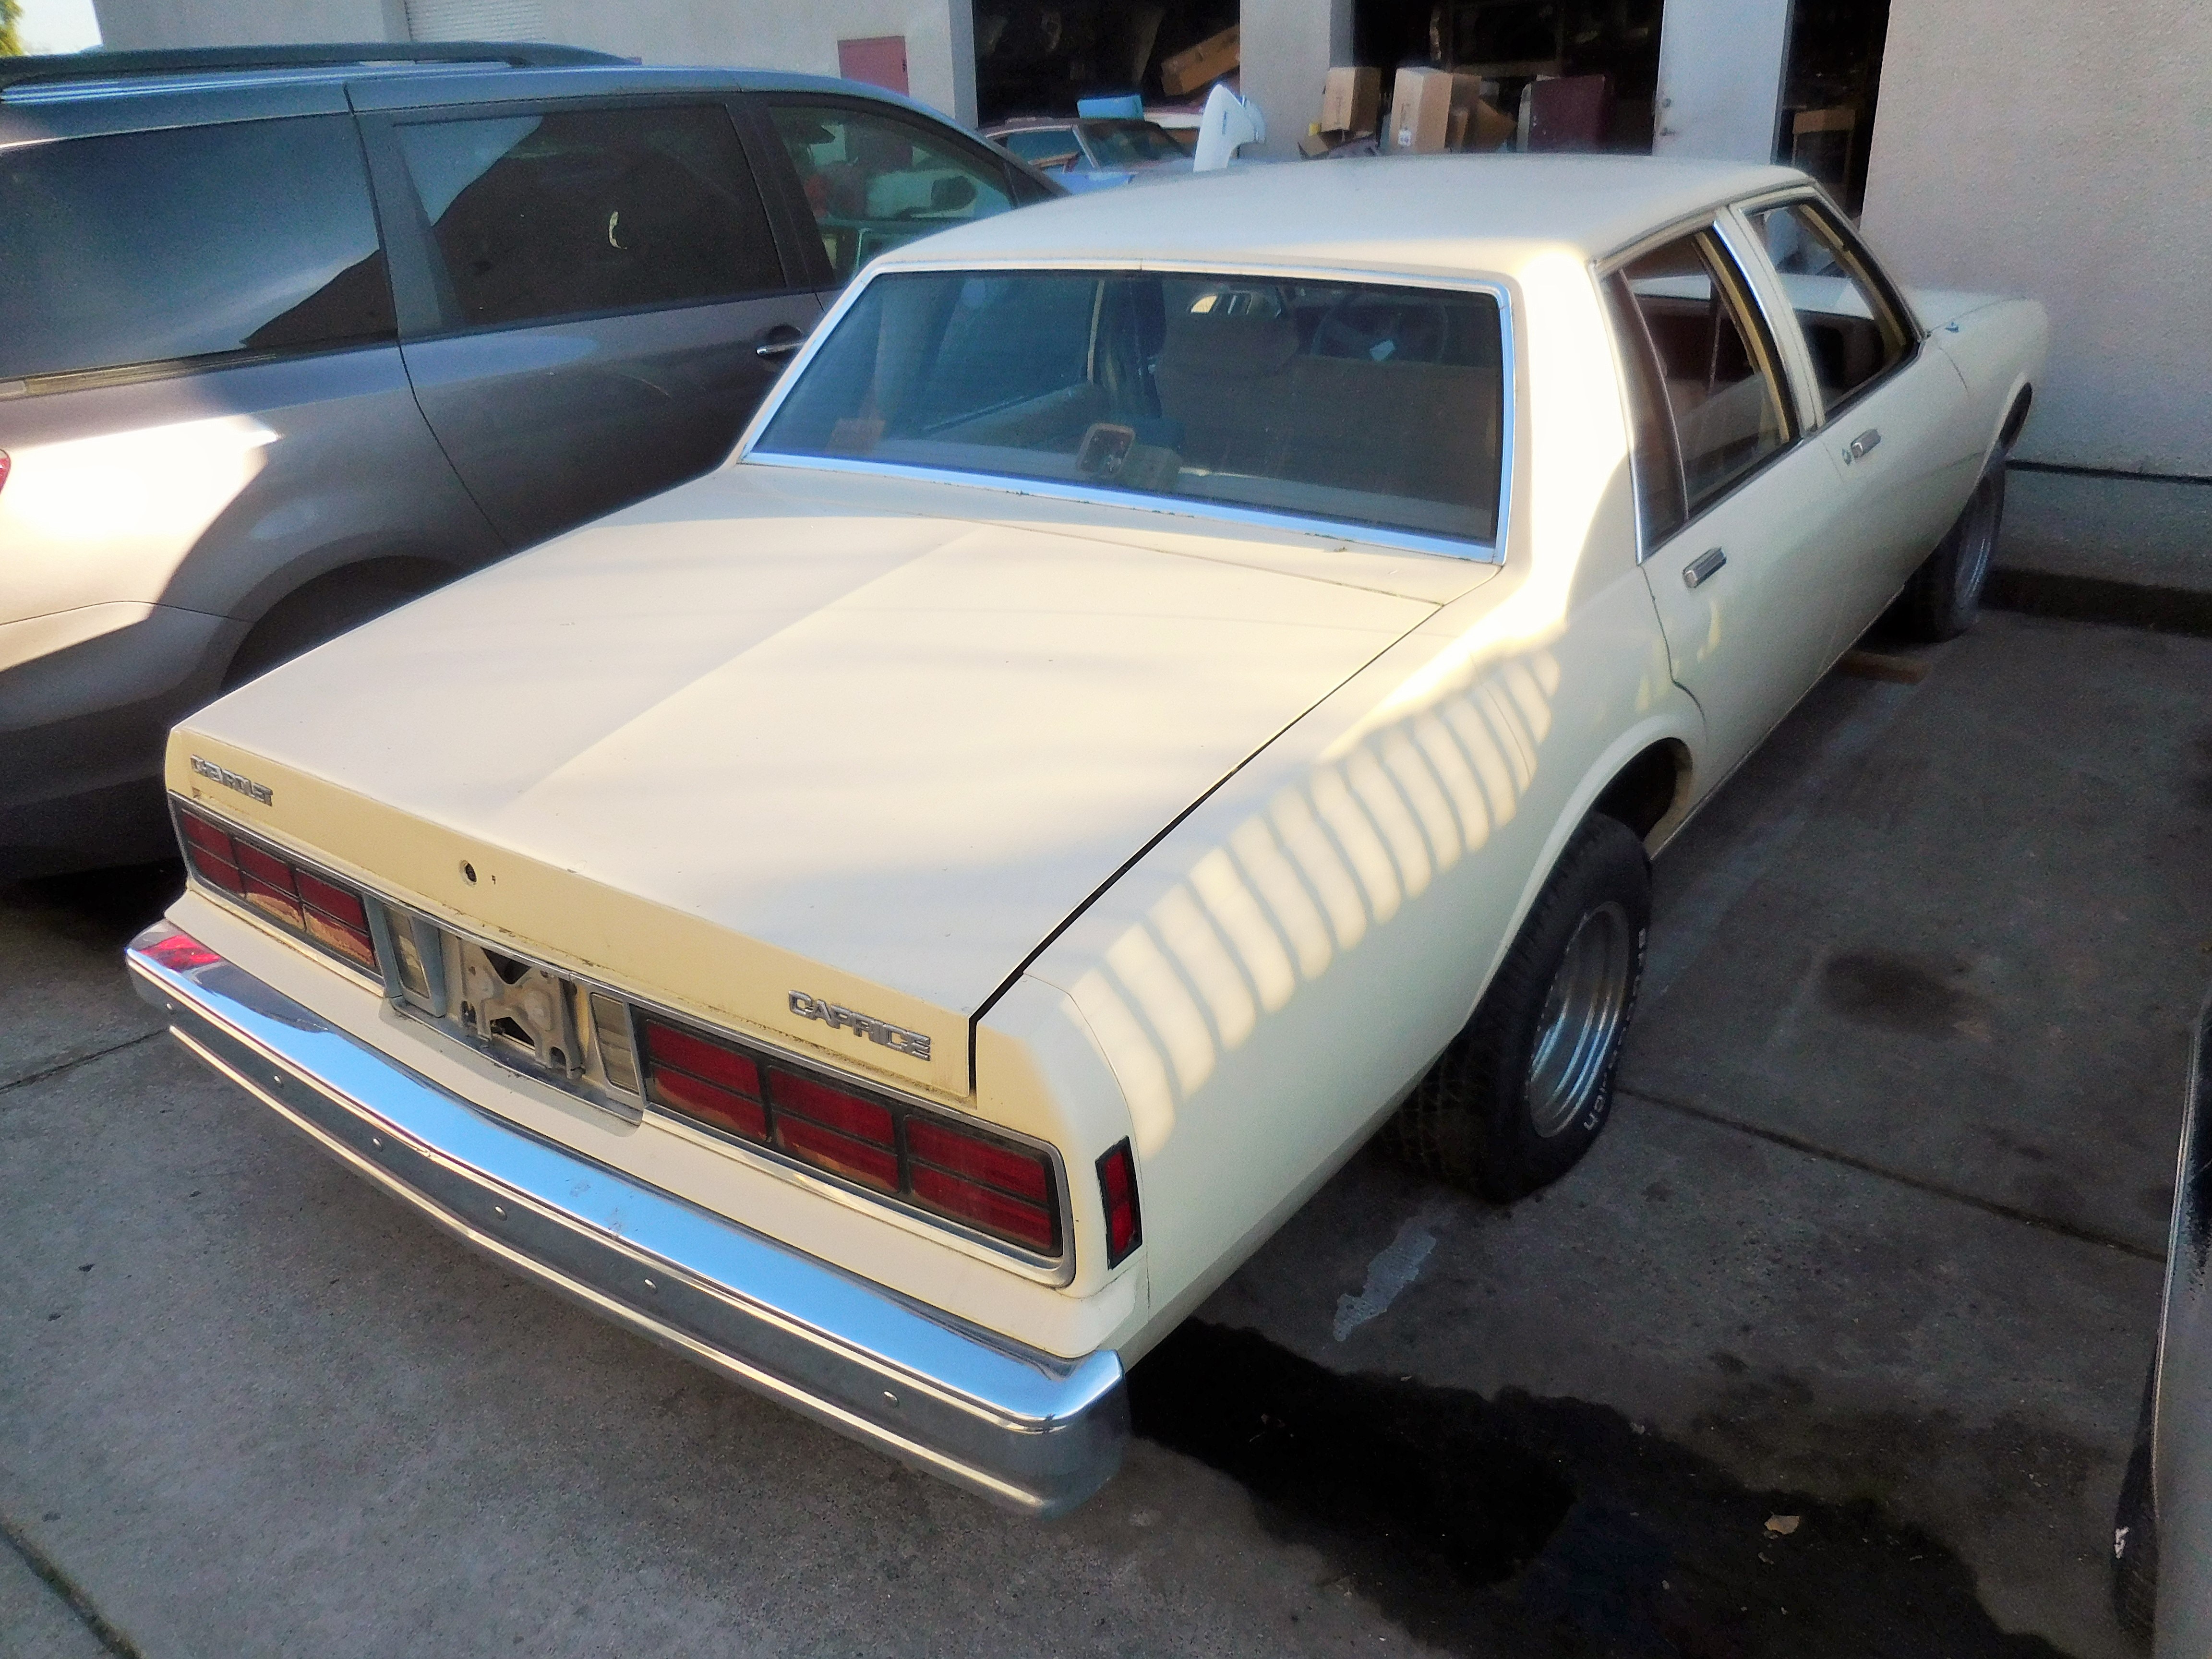 1986, Chevrolet, Caprice, 305, AT, 700R4,bumper,front,rear,door,hood,header,panel,deck,lid,glass,wheel,seat,dash,